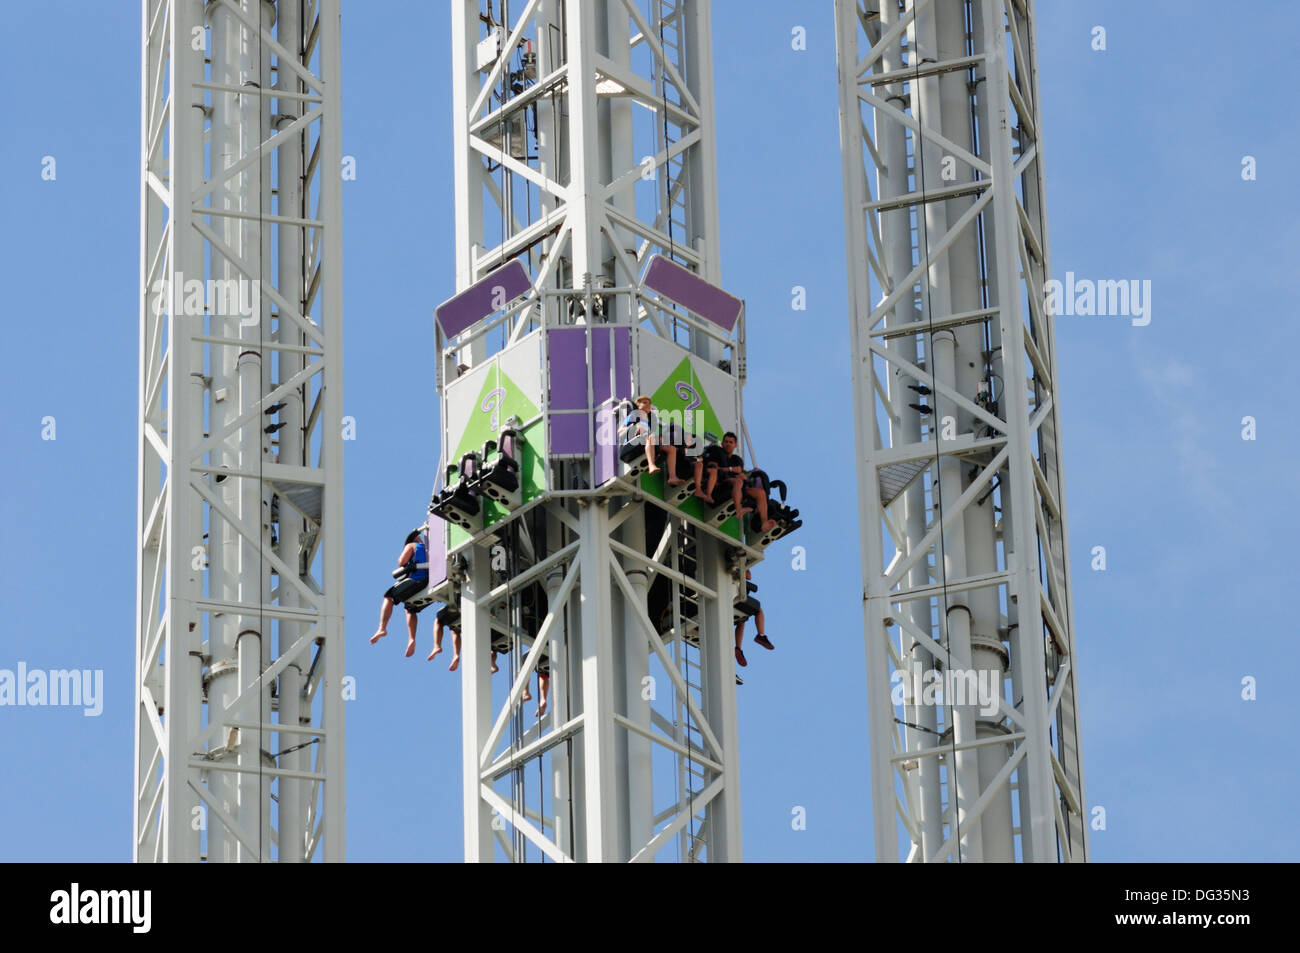 L'attrazione di spicco denominato La rivincita dell'enigma dove i passeggeri sono in caduta 80 m, Parque Warner, Madrid, Spagna Foto Stock